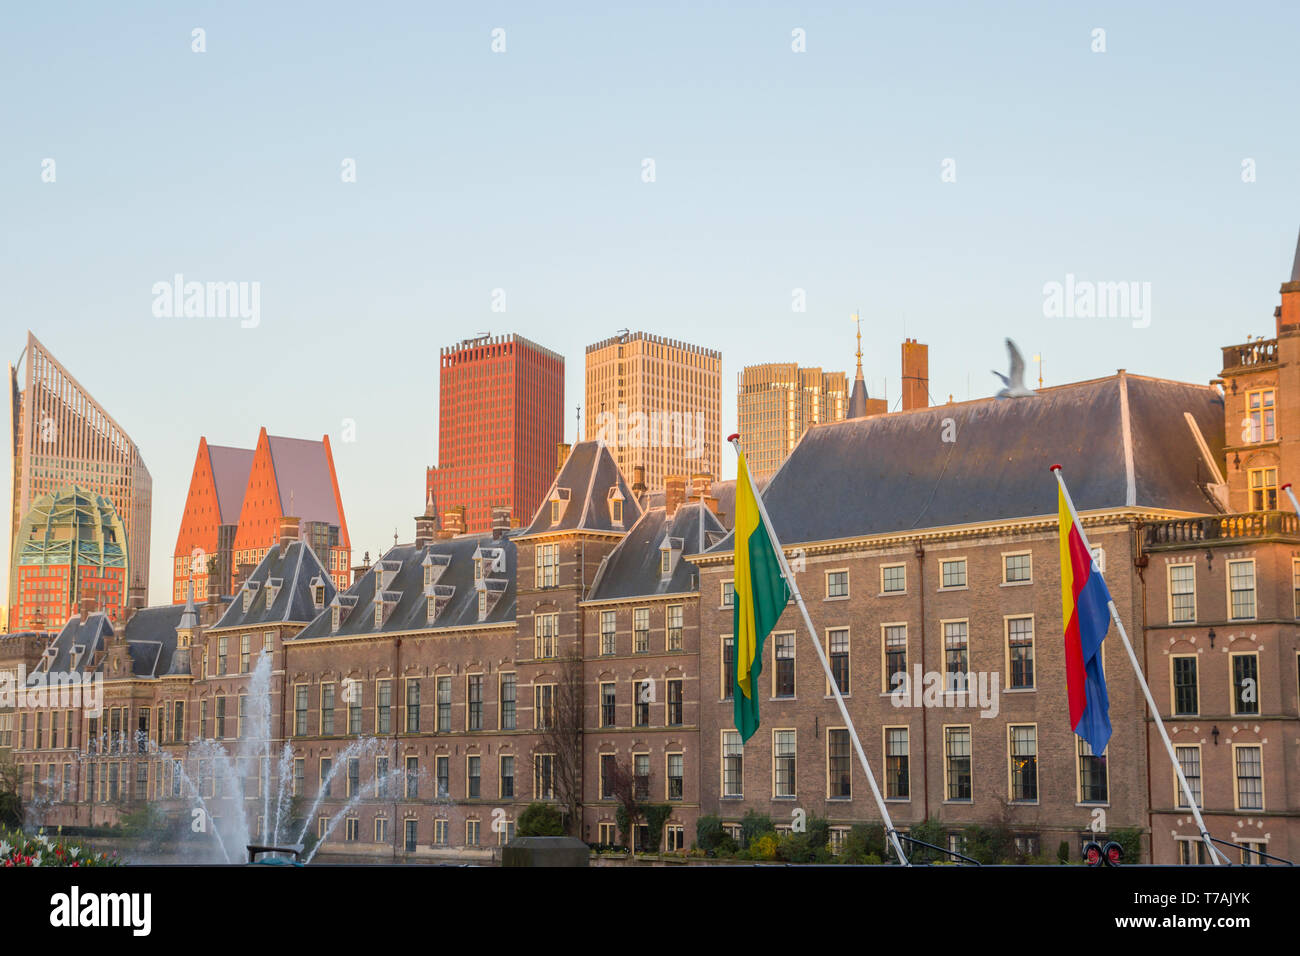 Hague parliament building Stock Photo